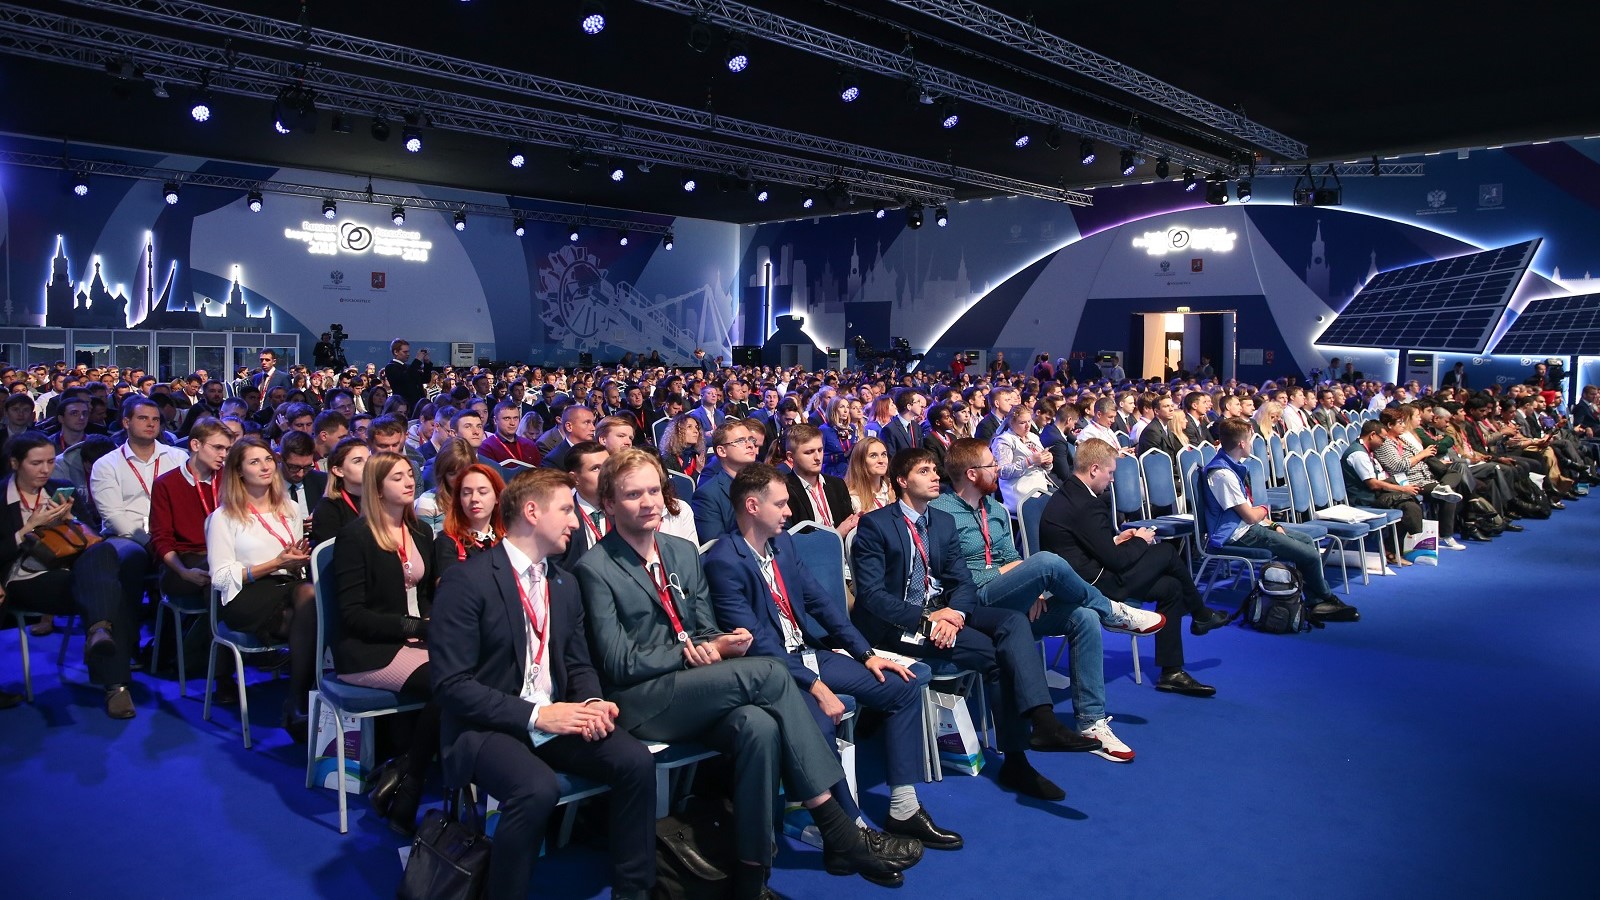 Бесплатная конференция "Формула бизнеса" пройдет в Екатеринбурге